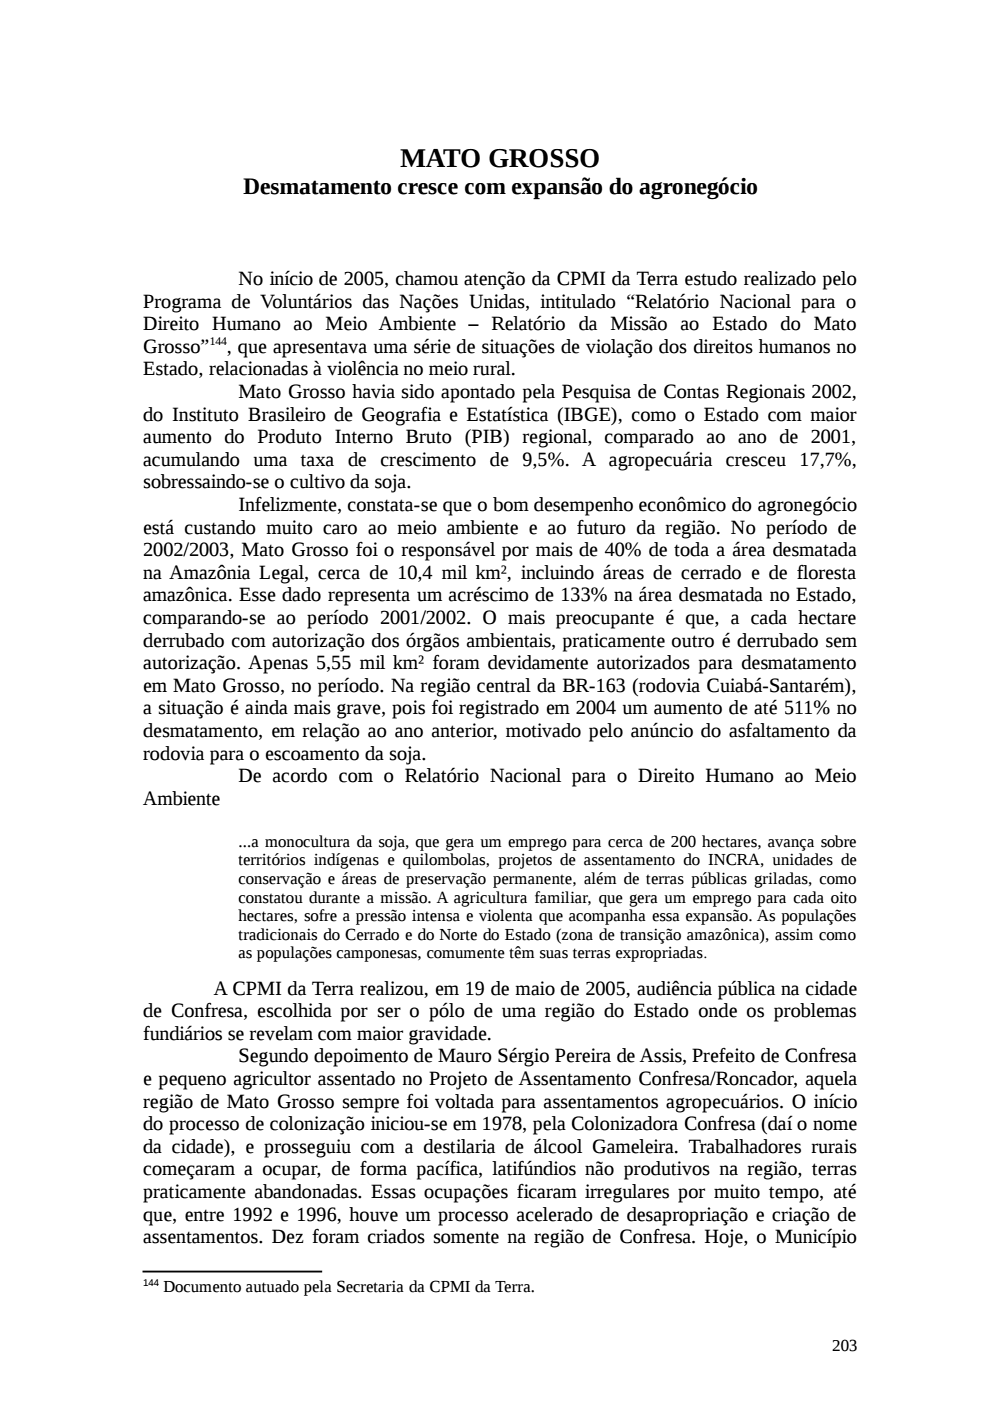 Page 203 from Relatório final da comissão